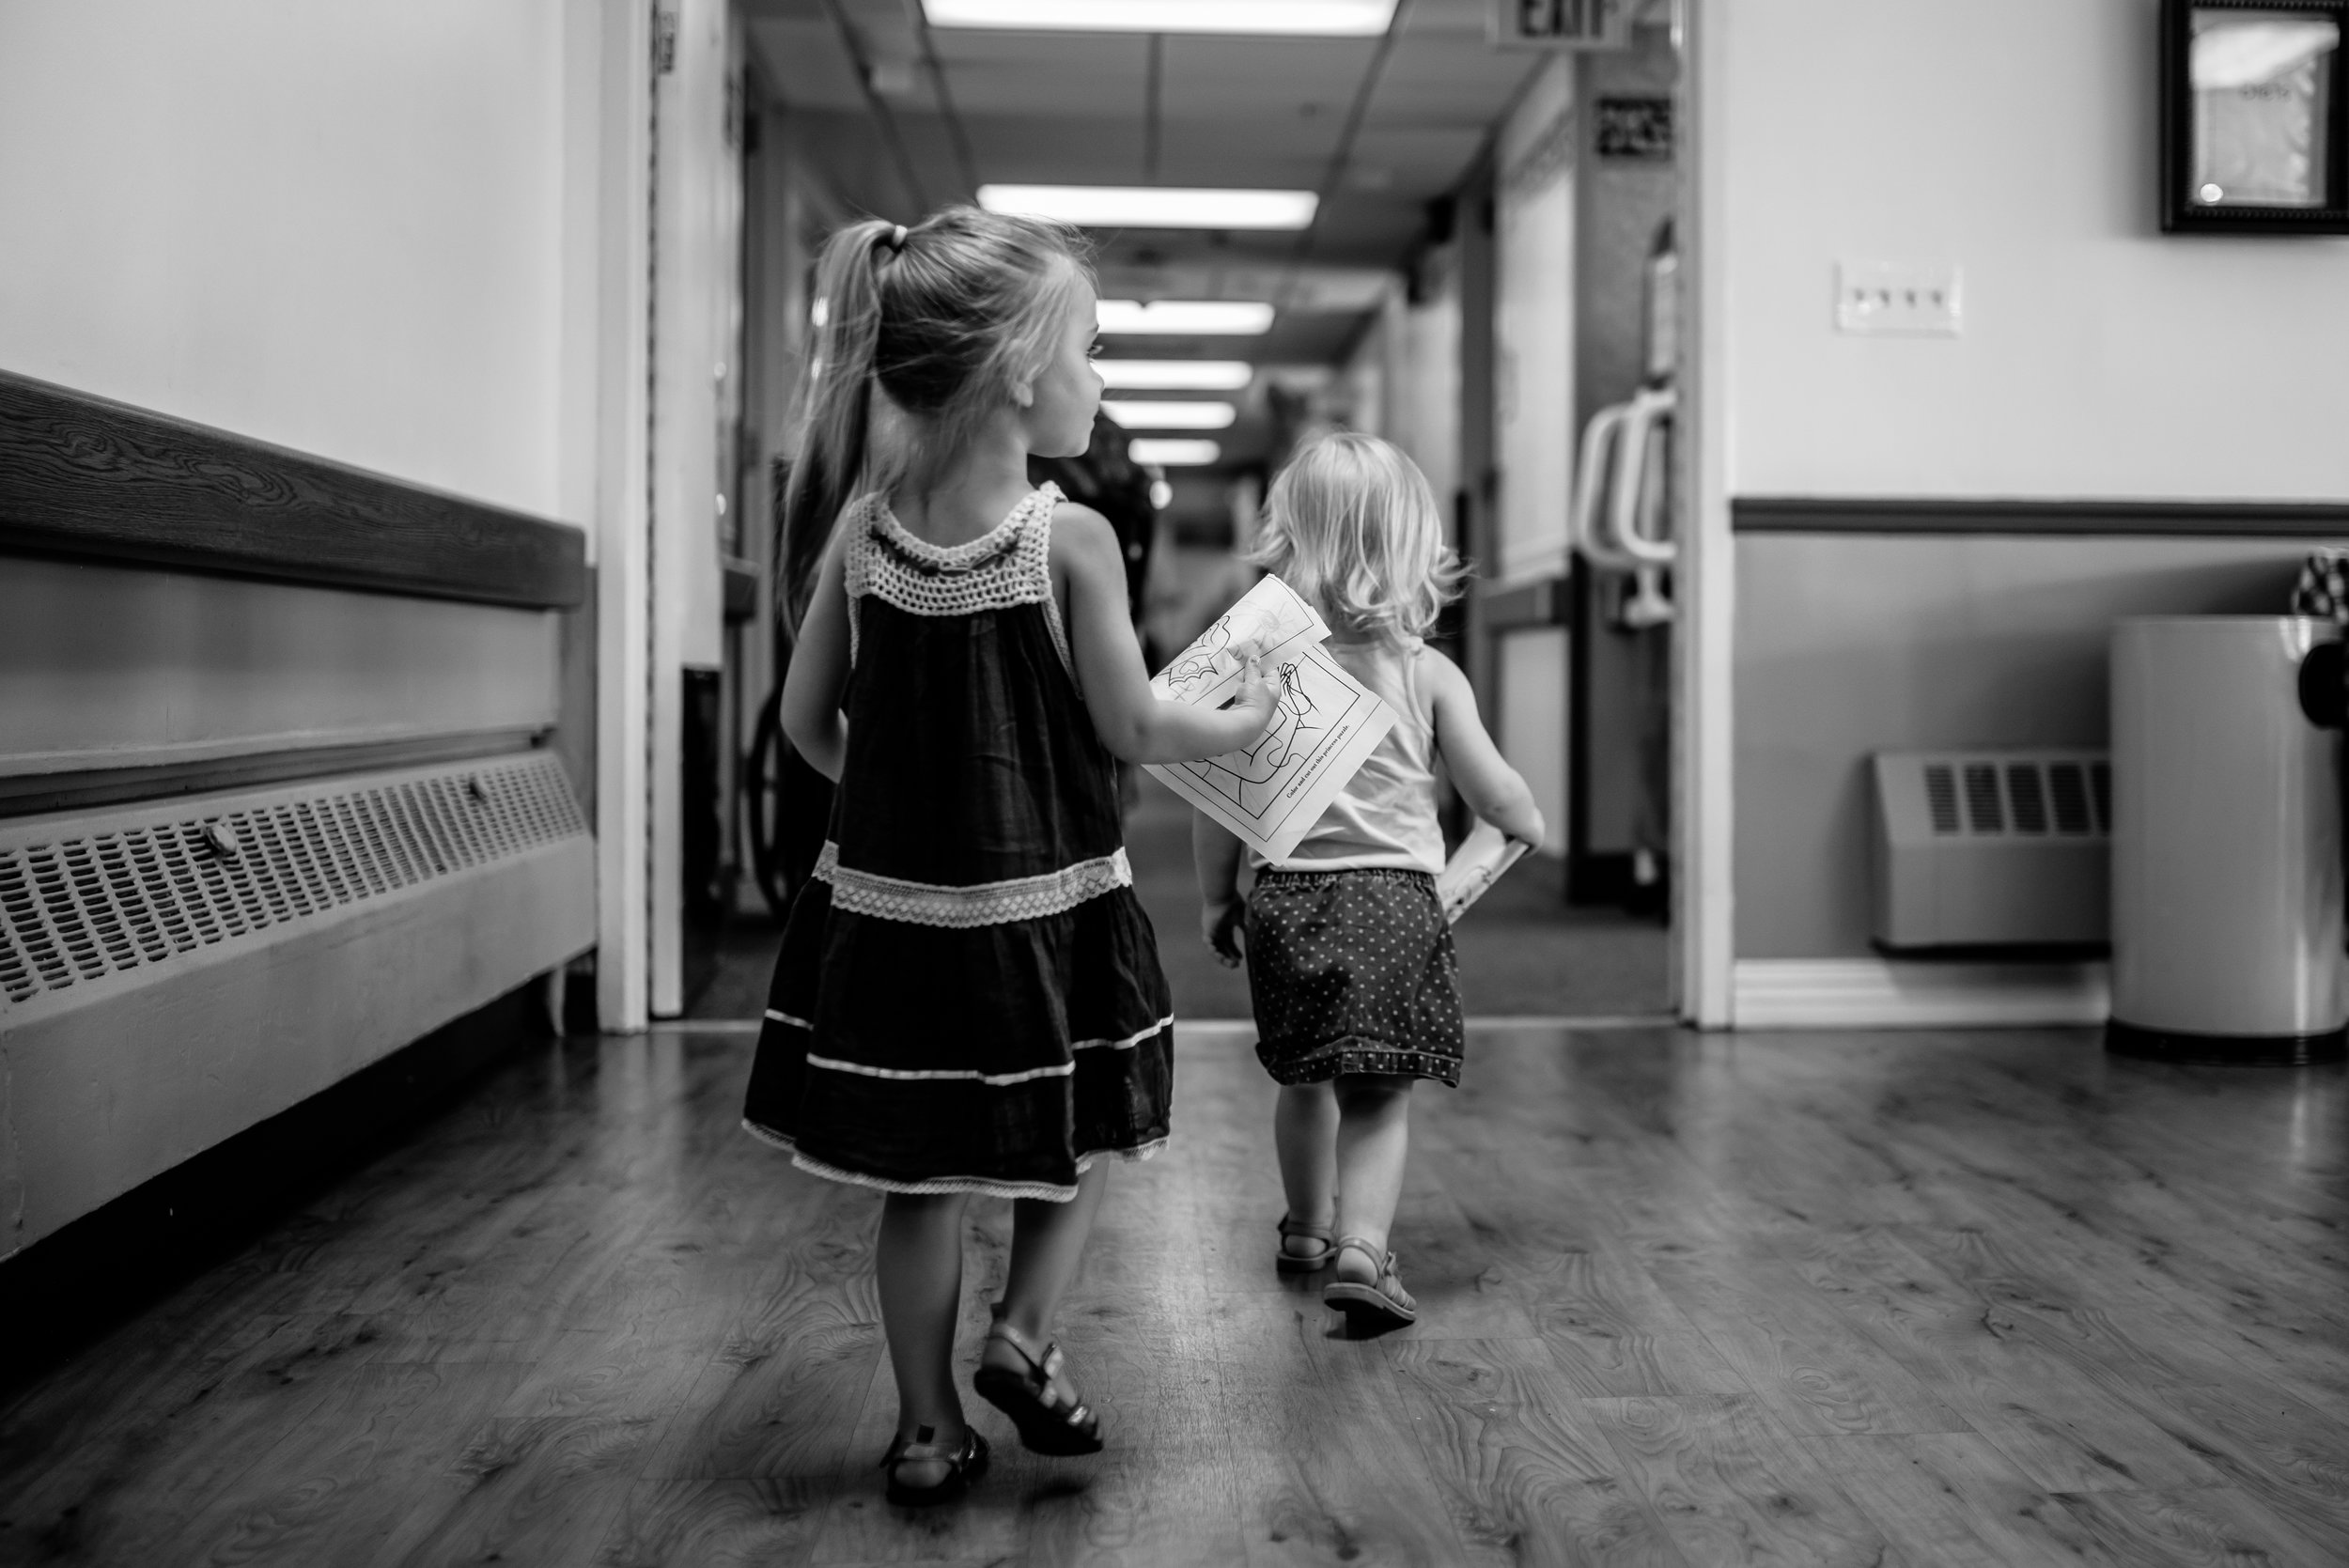 Girls walking down hallway of nursing home